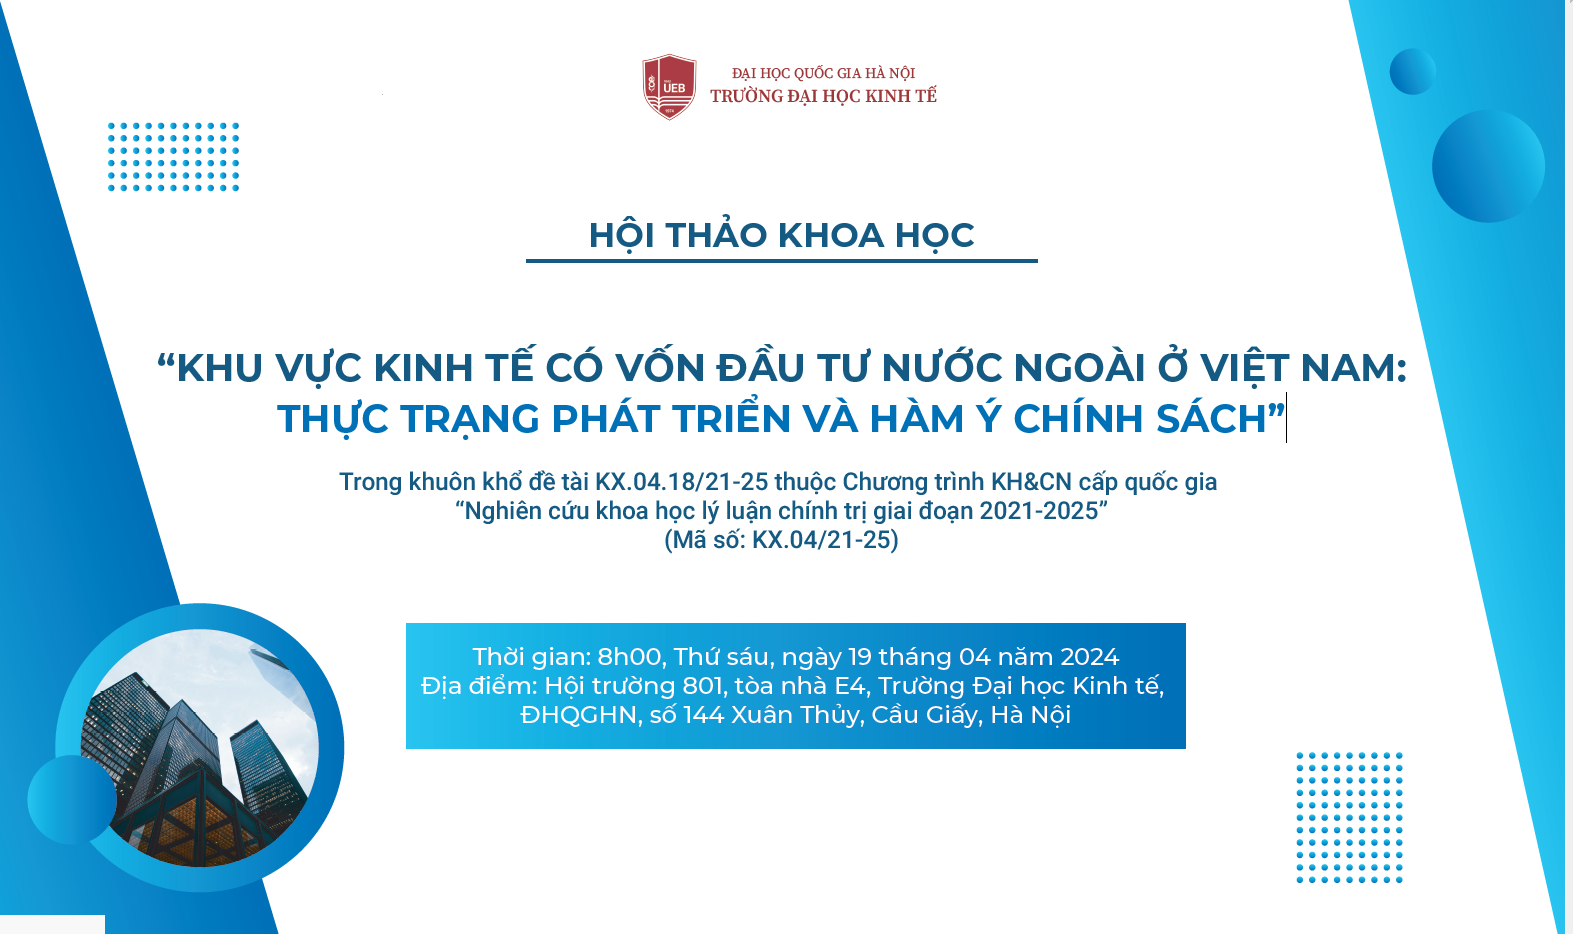 Hội thảo khoa học "Khu vực kinh tế có vốn đầu tư nước ngoài ở Việt Nam: Thực trạng phát triển và hàm ý chính sách"